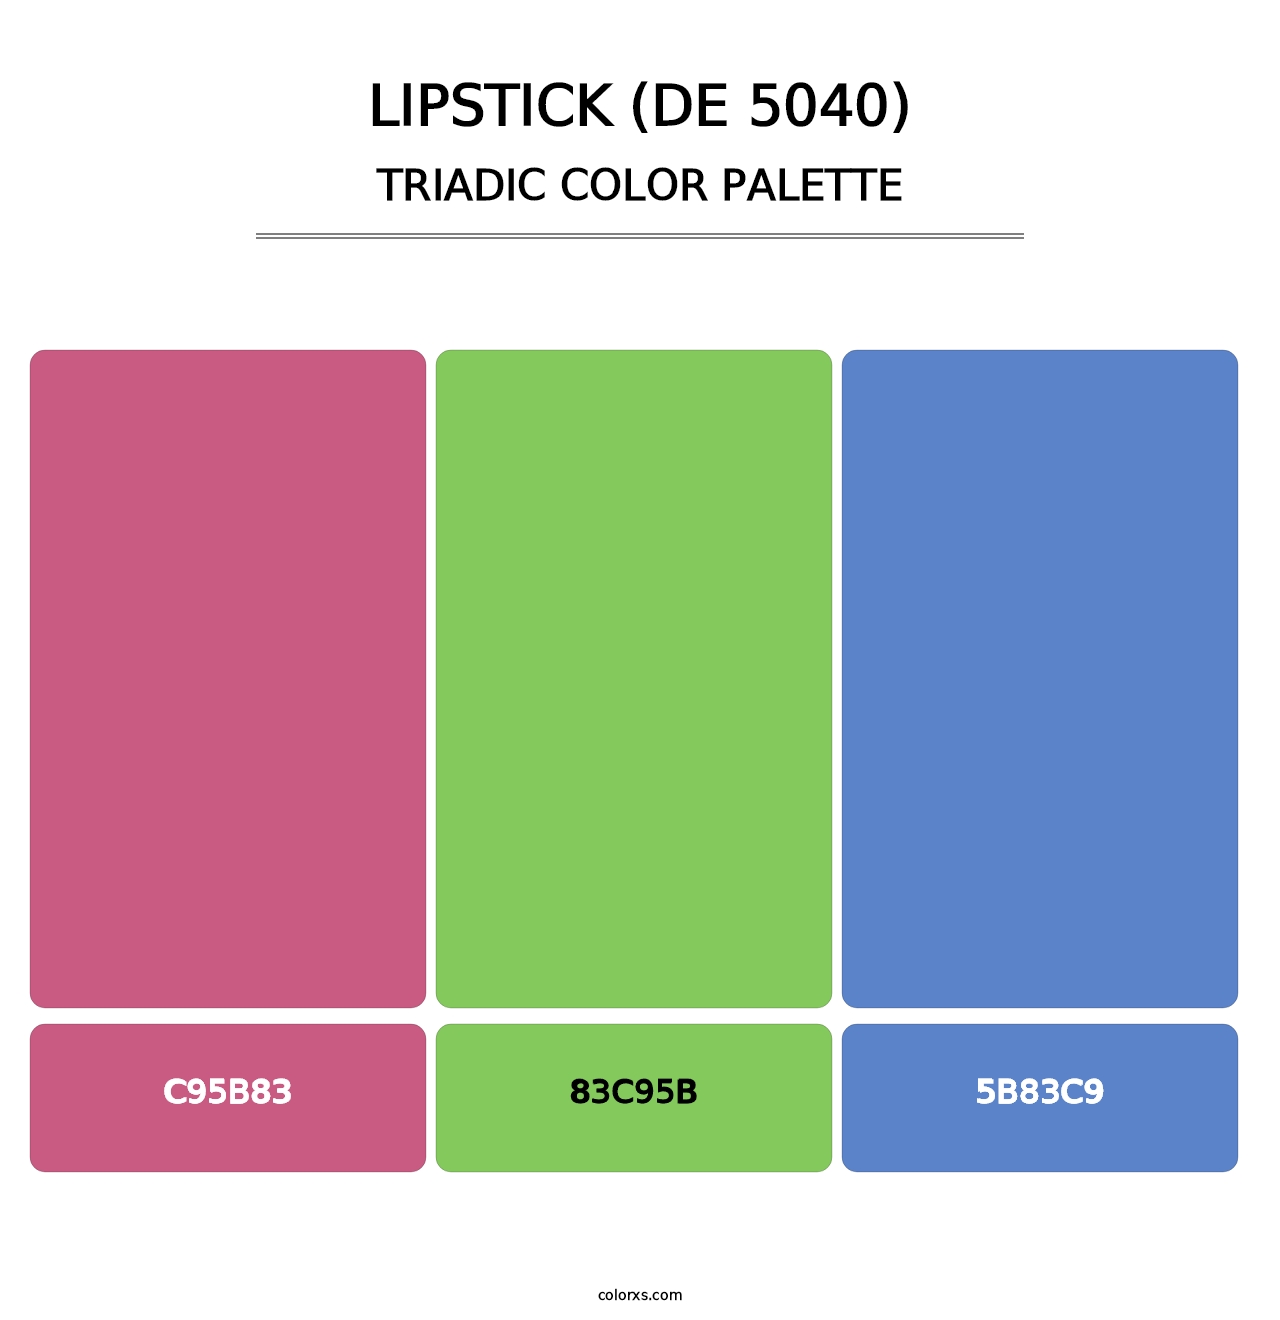 Lipstick (DE 5040) - Triadic Color Palette